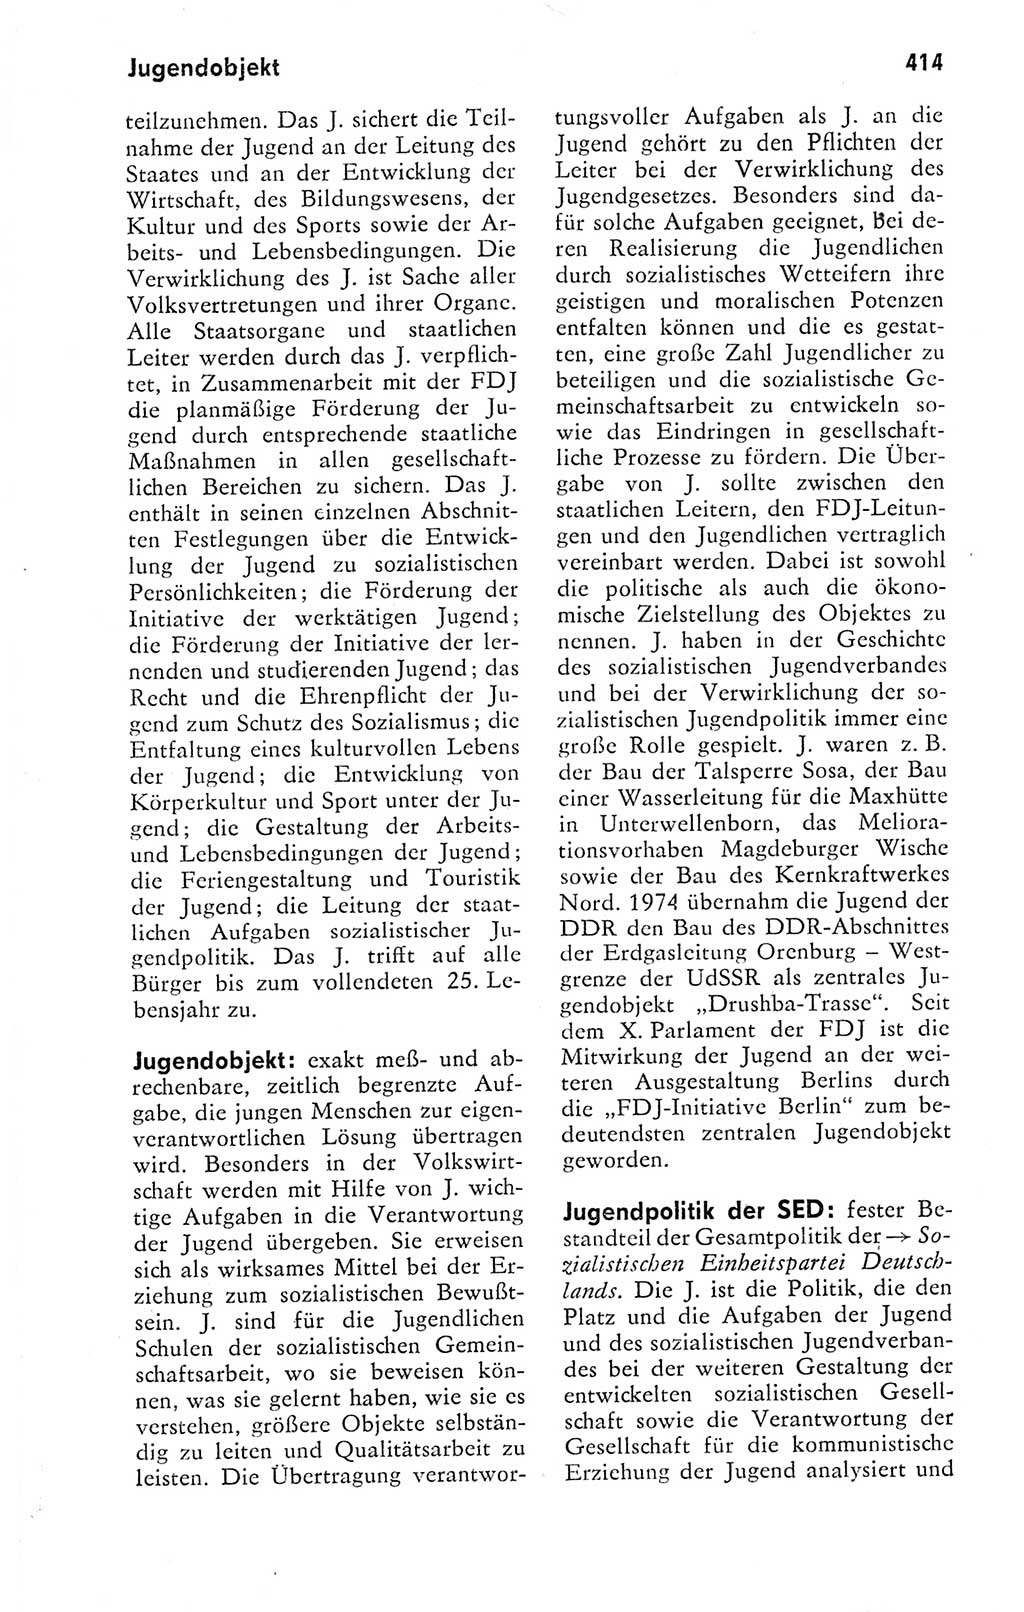 Kleines politisches Wörterbuch [Deutsche Demokratische Republik (DDR)] 1978, Seite 414 (Kl. pol. Wb. DDR 1978, S. 414)